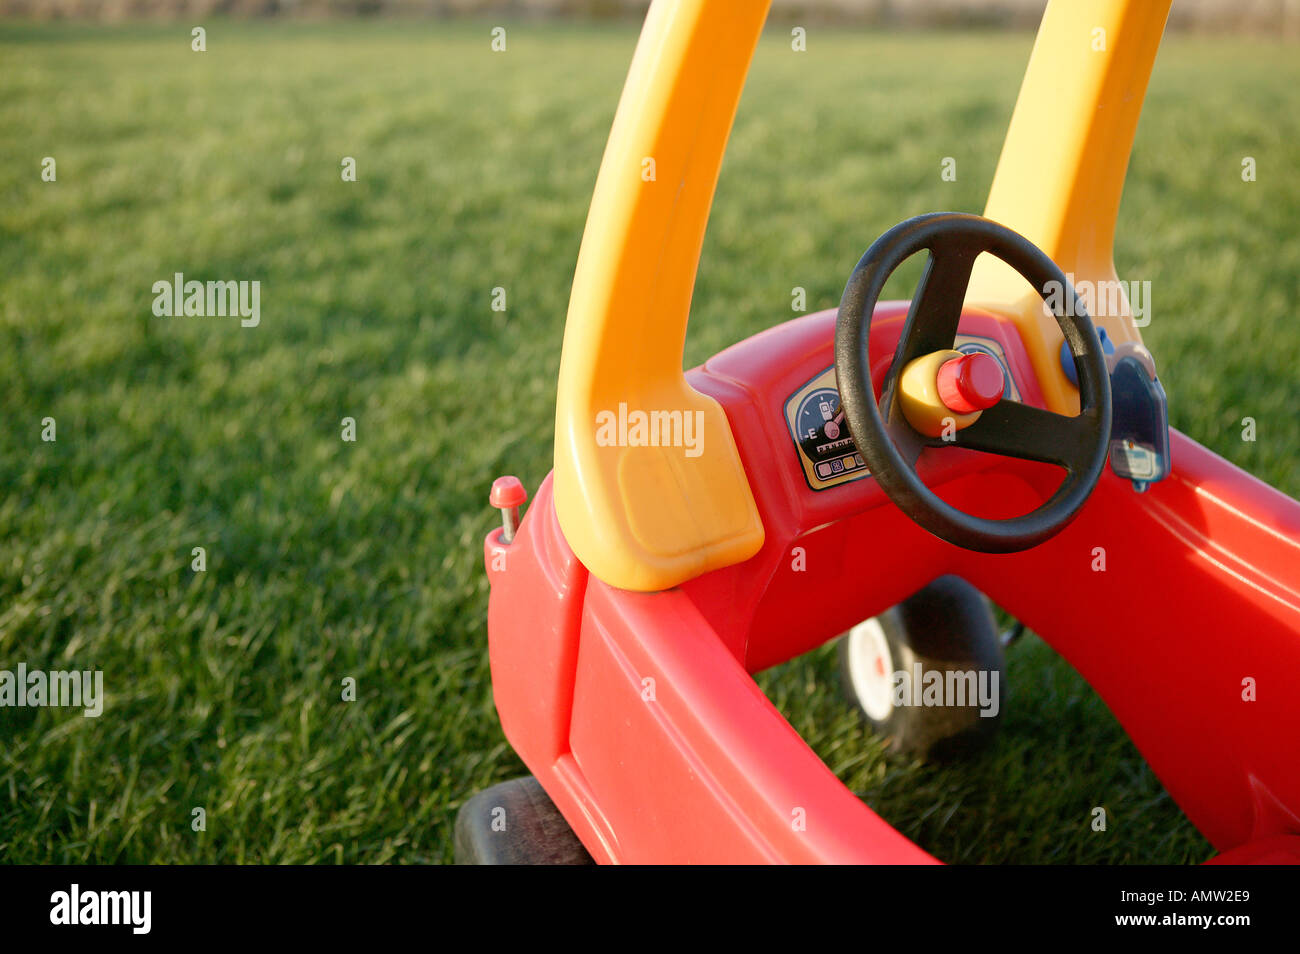 rote und gelbe Kinder Spielzeug Auto zeigen Cockpit mit Lenkrad und große  Rasenfläche Garten bietet Exemplar fahren Stockfotografie - Alamy